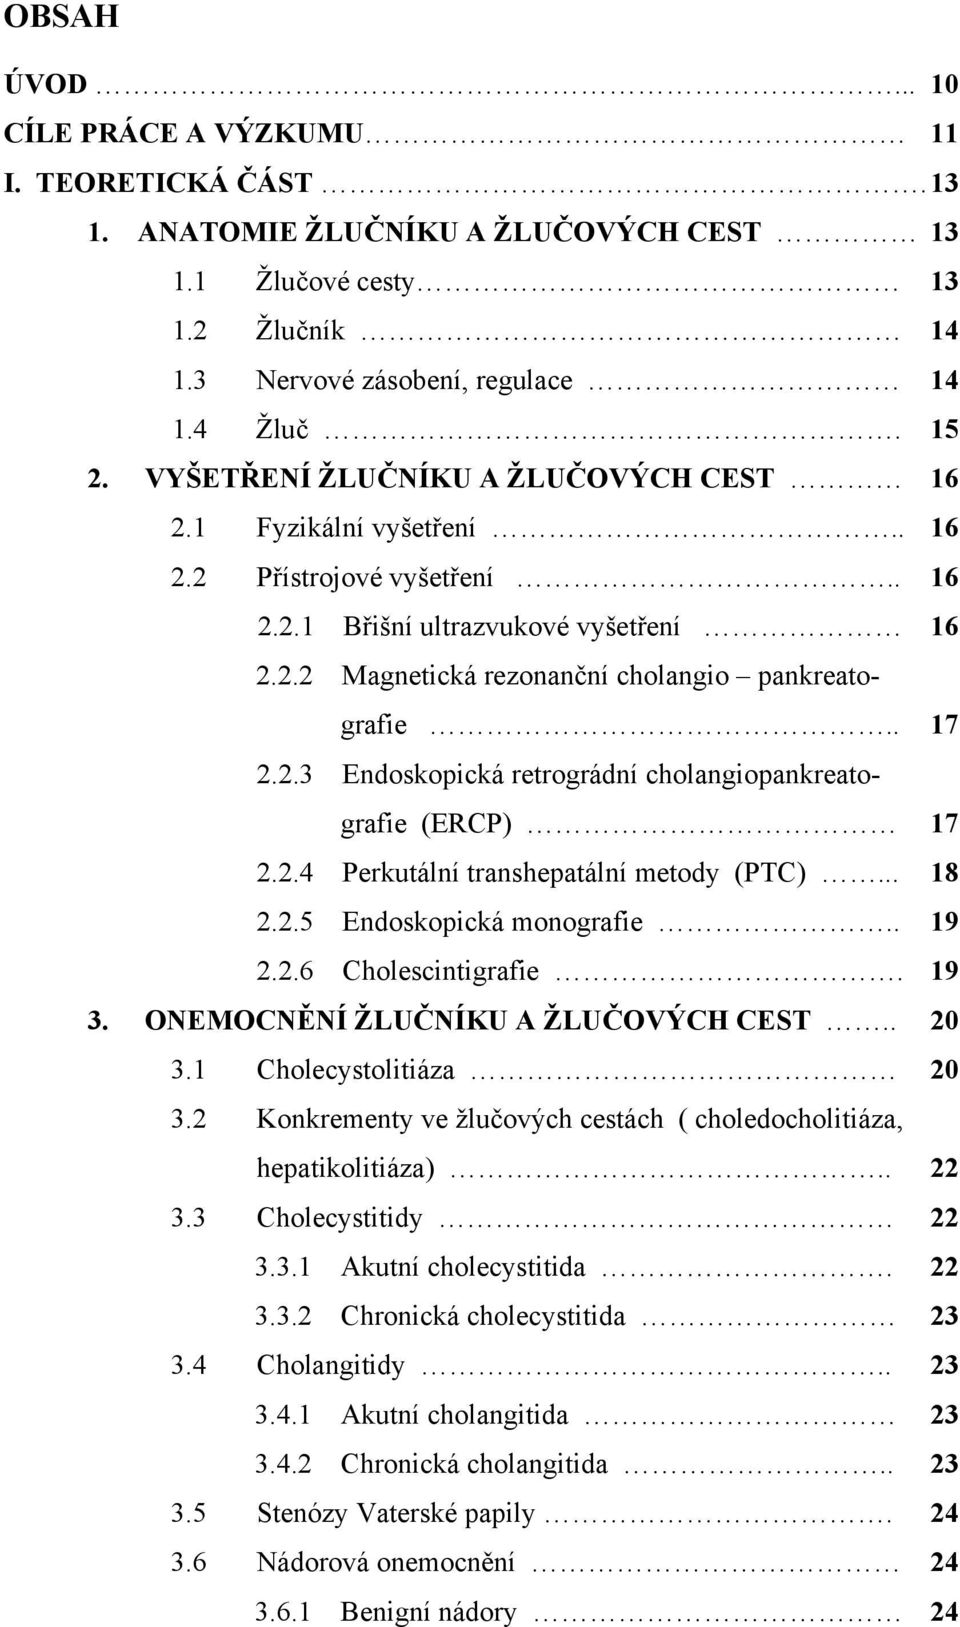 2.3 Endoskopická retrográdní cholangiopankreatografie (ERCP) 17 2.2.4 Perkutální transhepatální metody (PTC)... 18 2.2.5 Endoskopická monografie.. 19 2.2.6 Cholescintigrafie. 19 3.